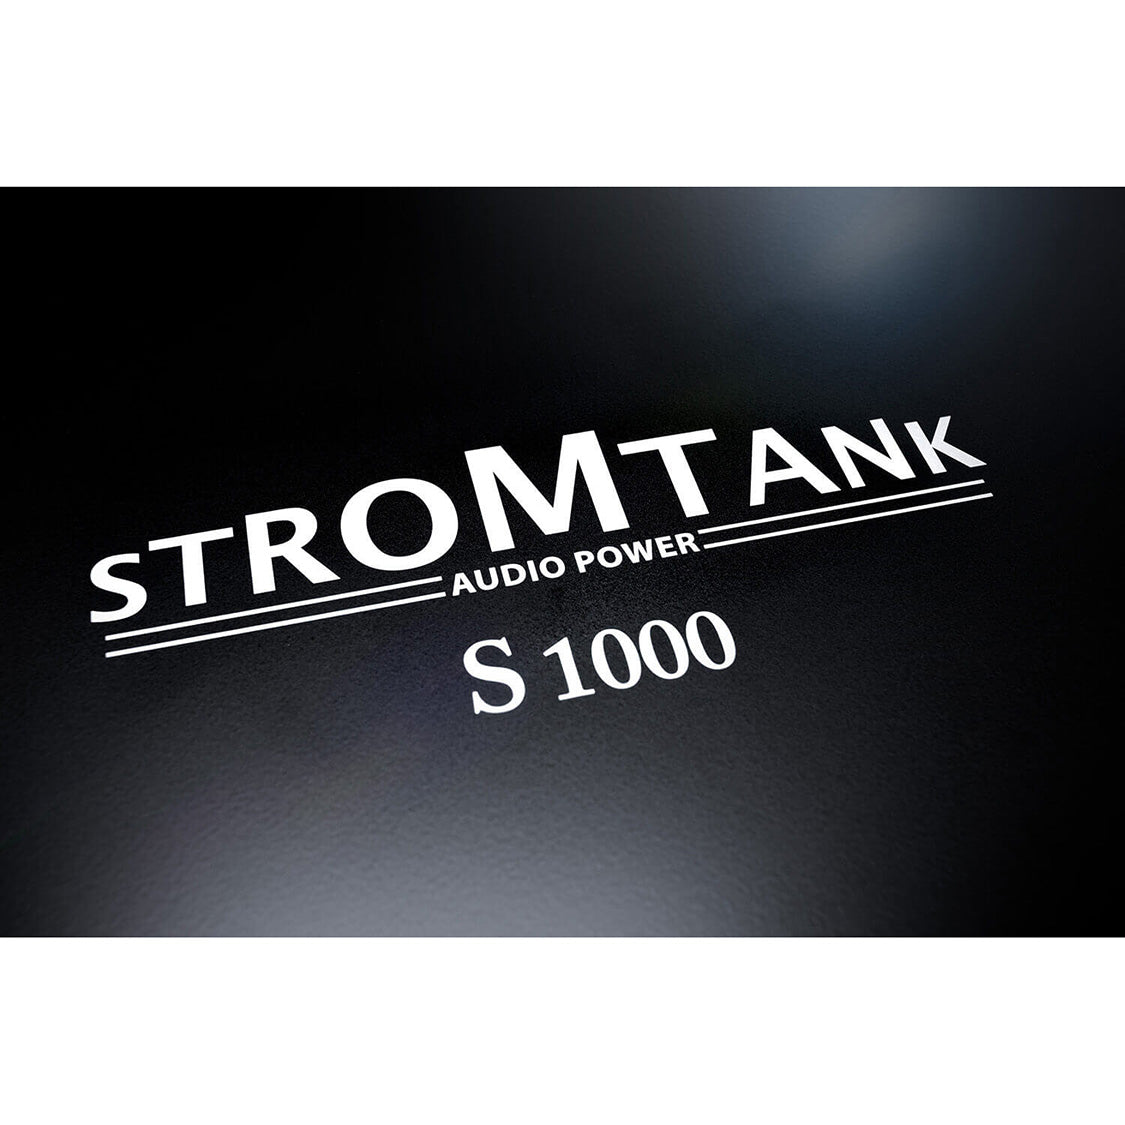 Stromtank S1000 Battery Power Unit